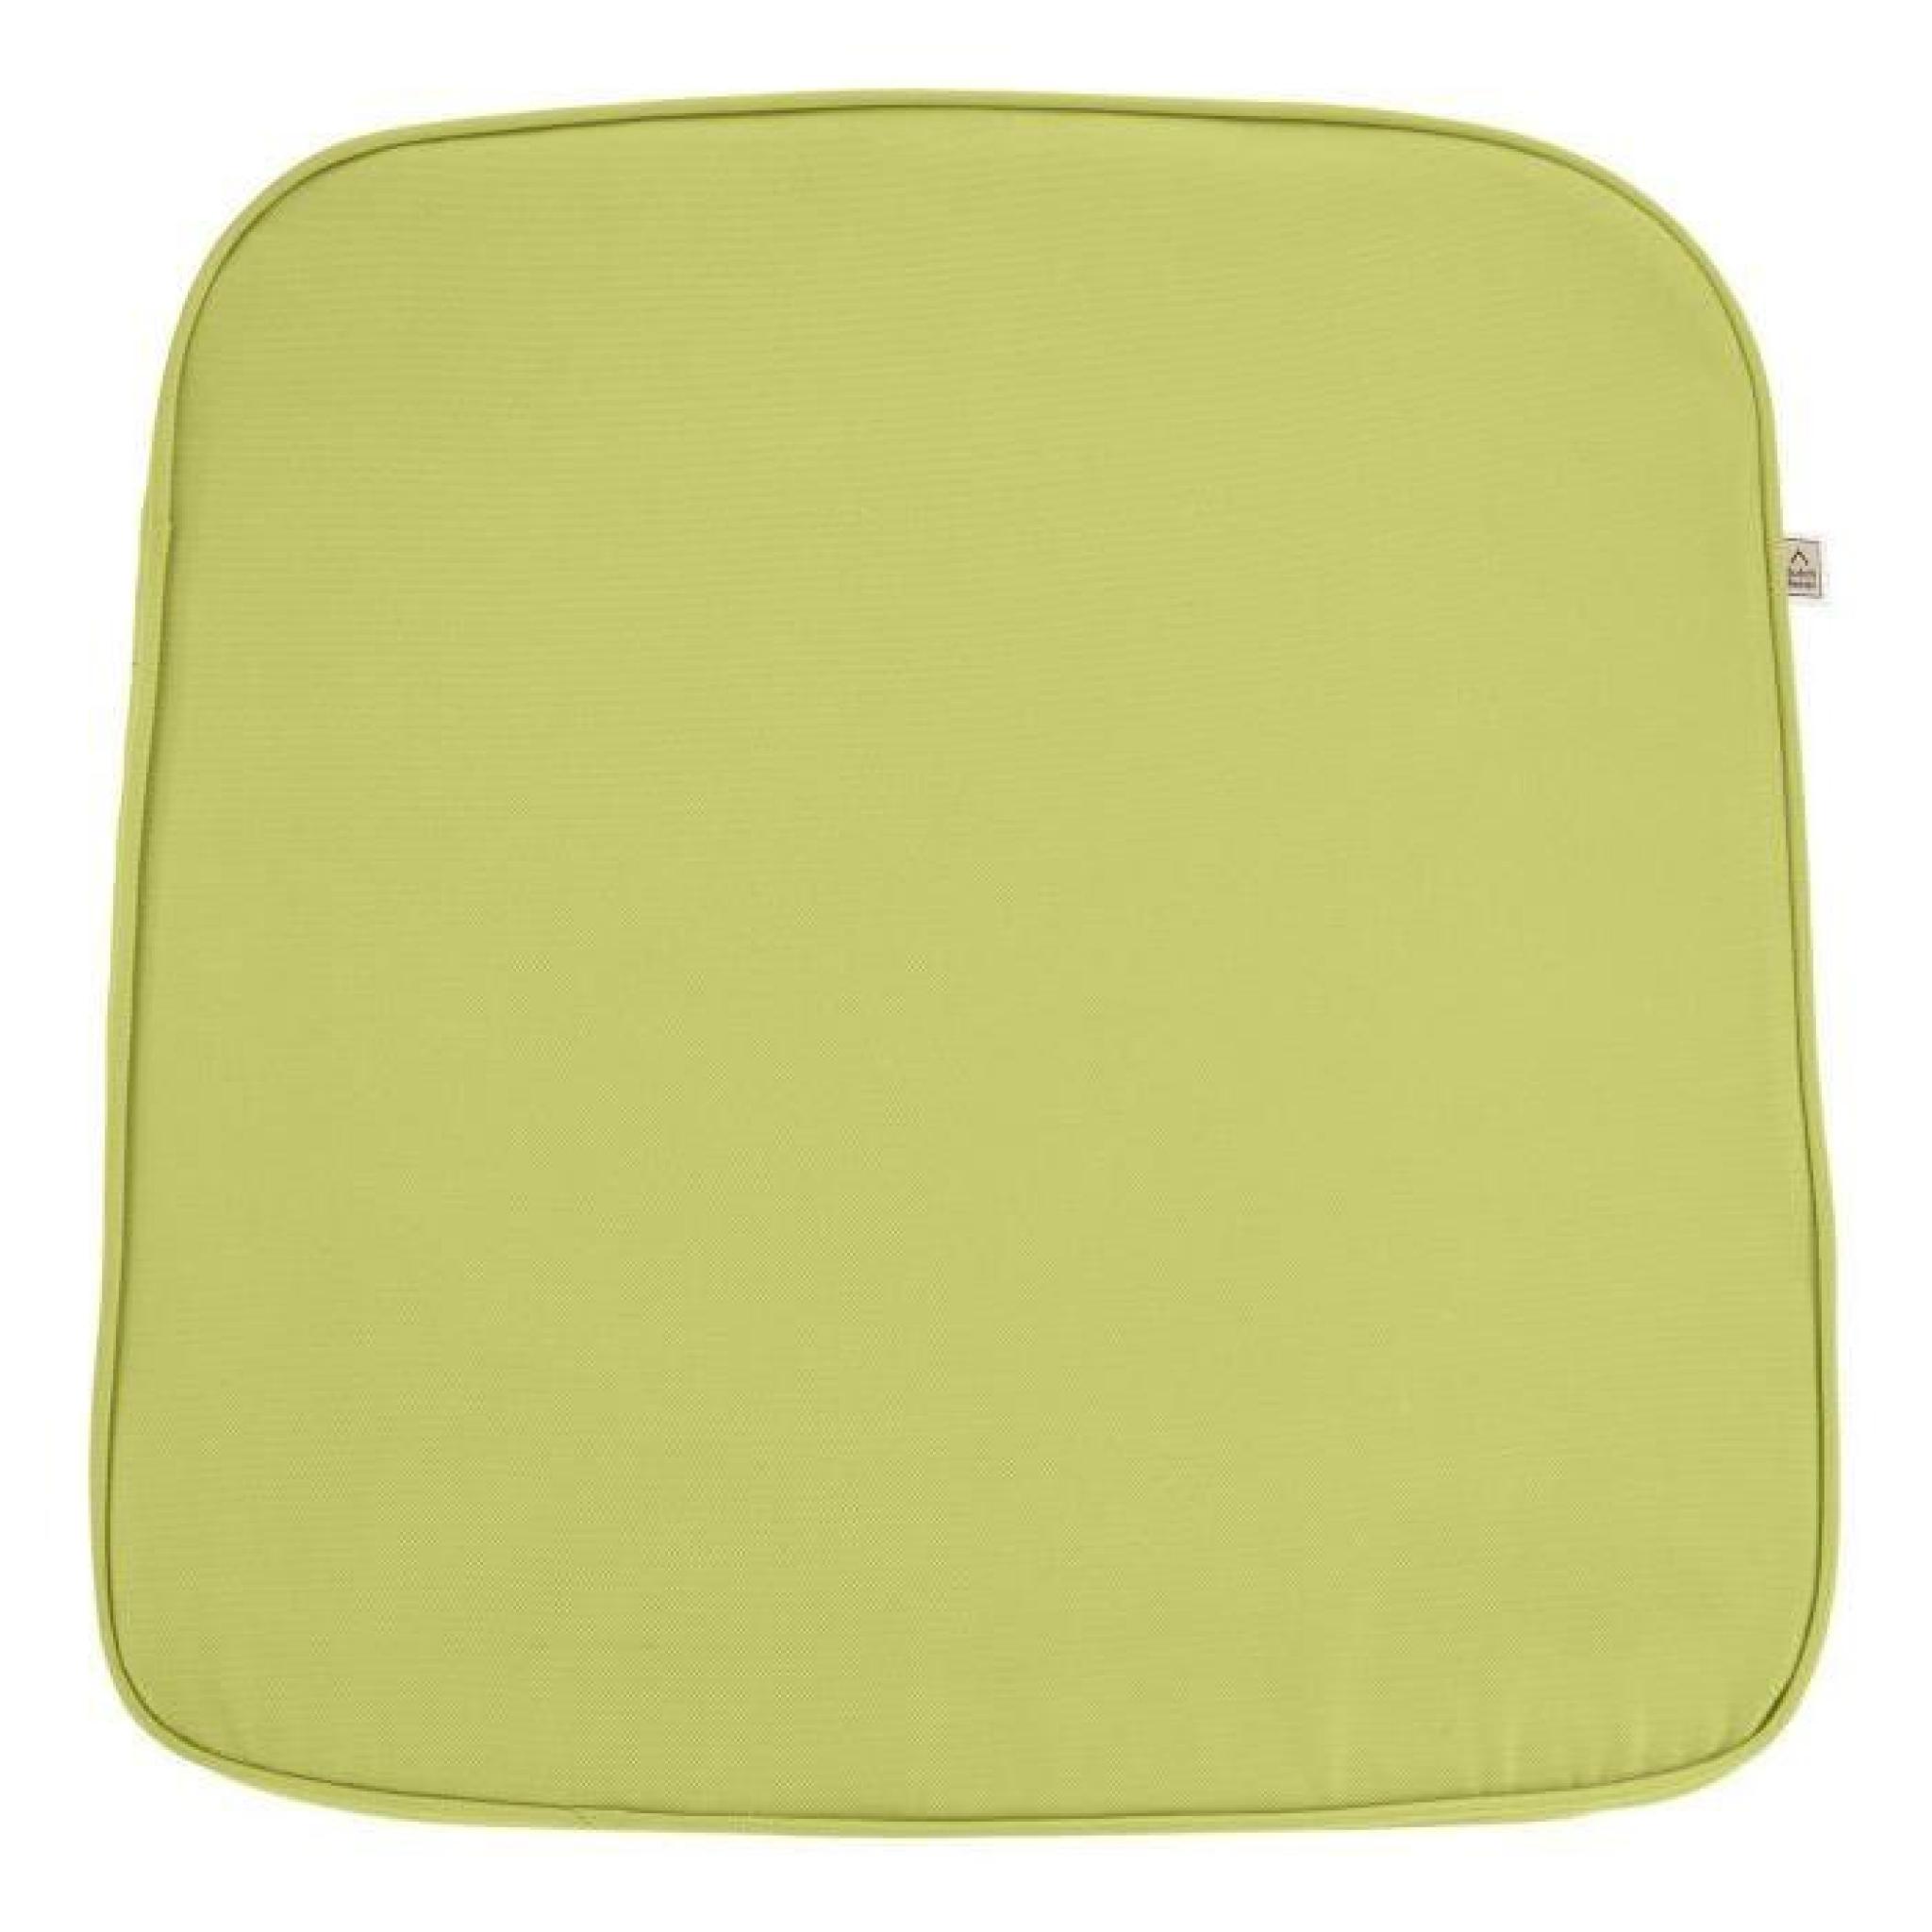 Galette de chaise Sunny PK2 44x46x5 cm citron-vert